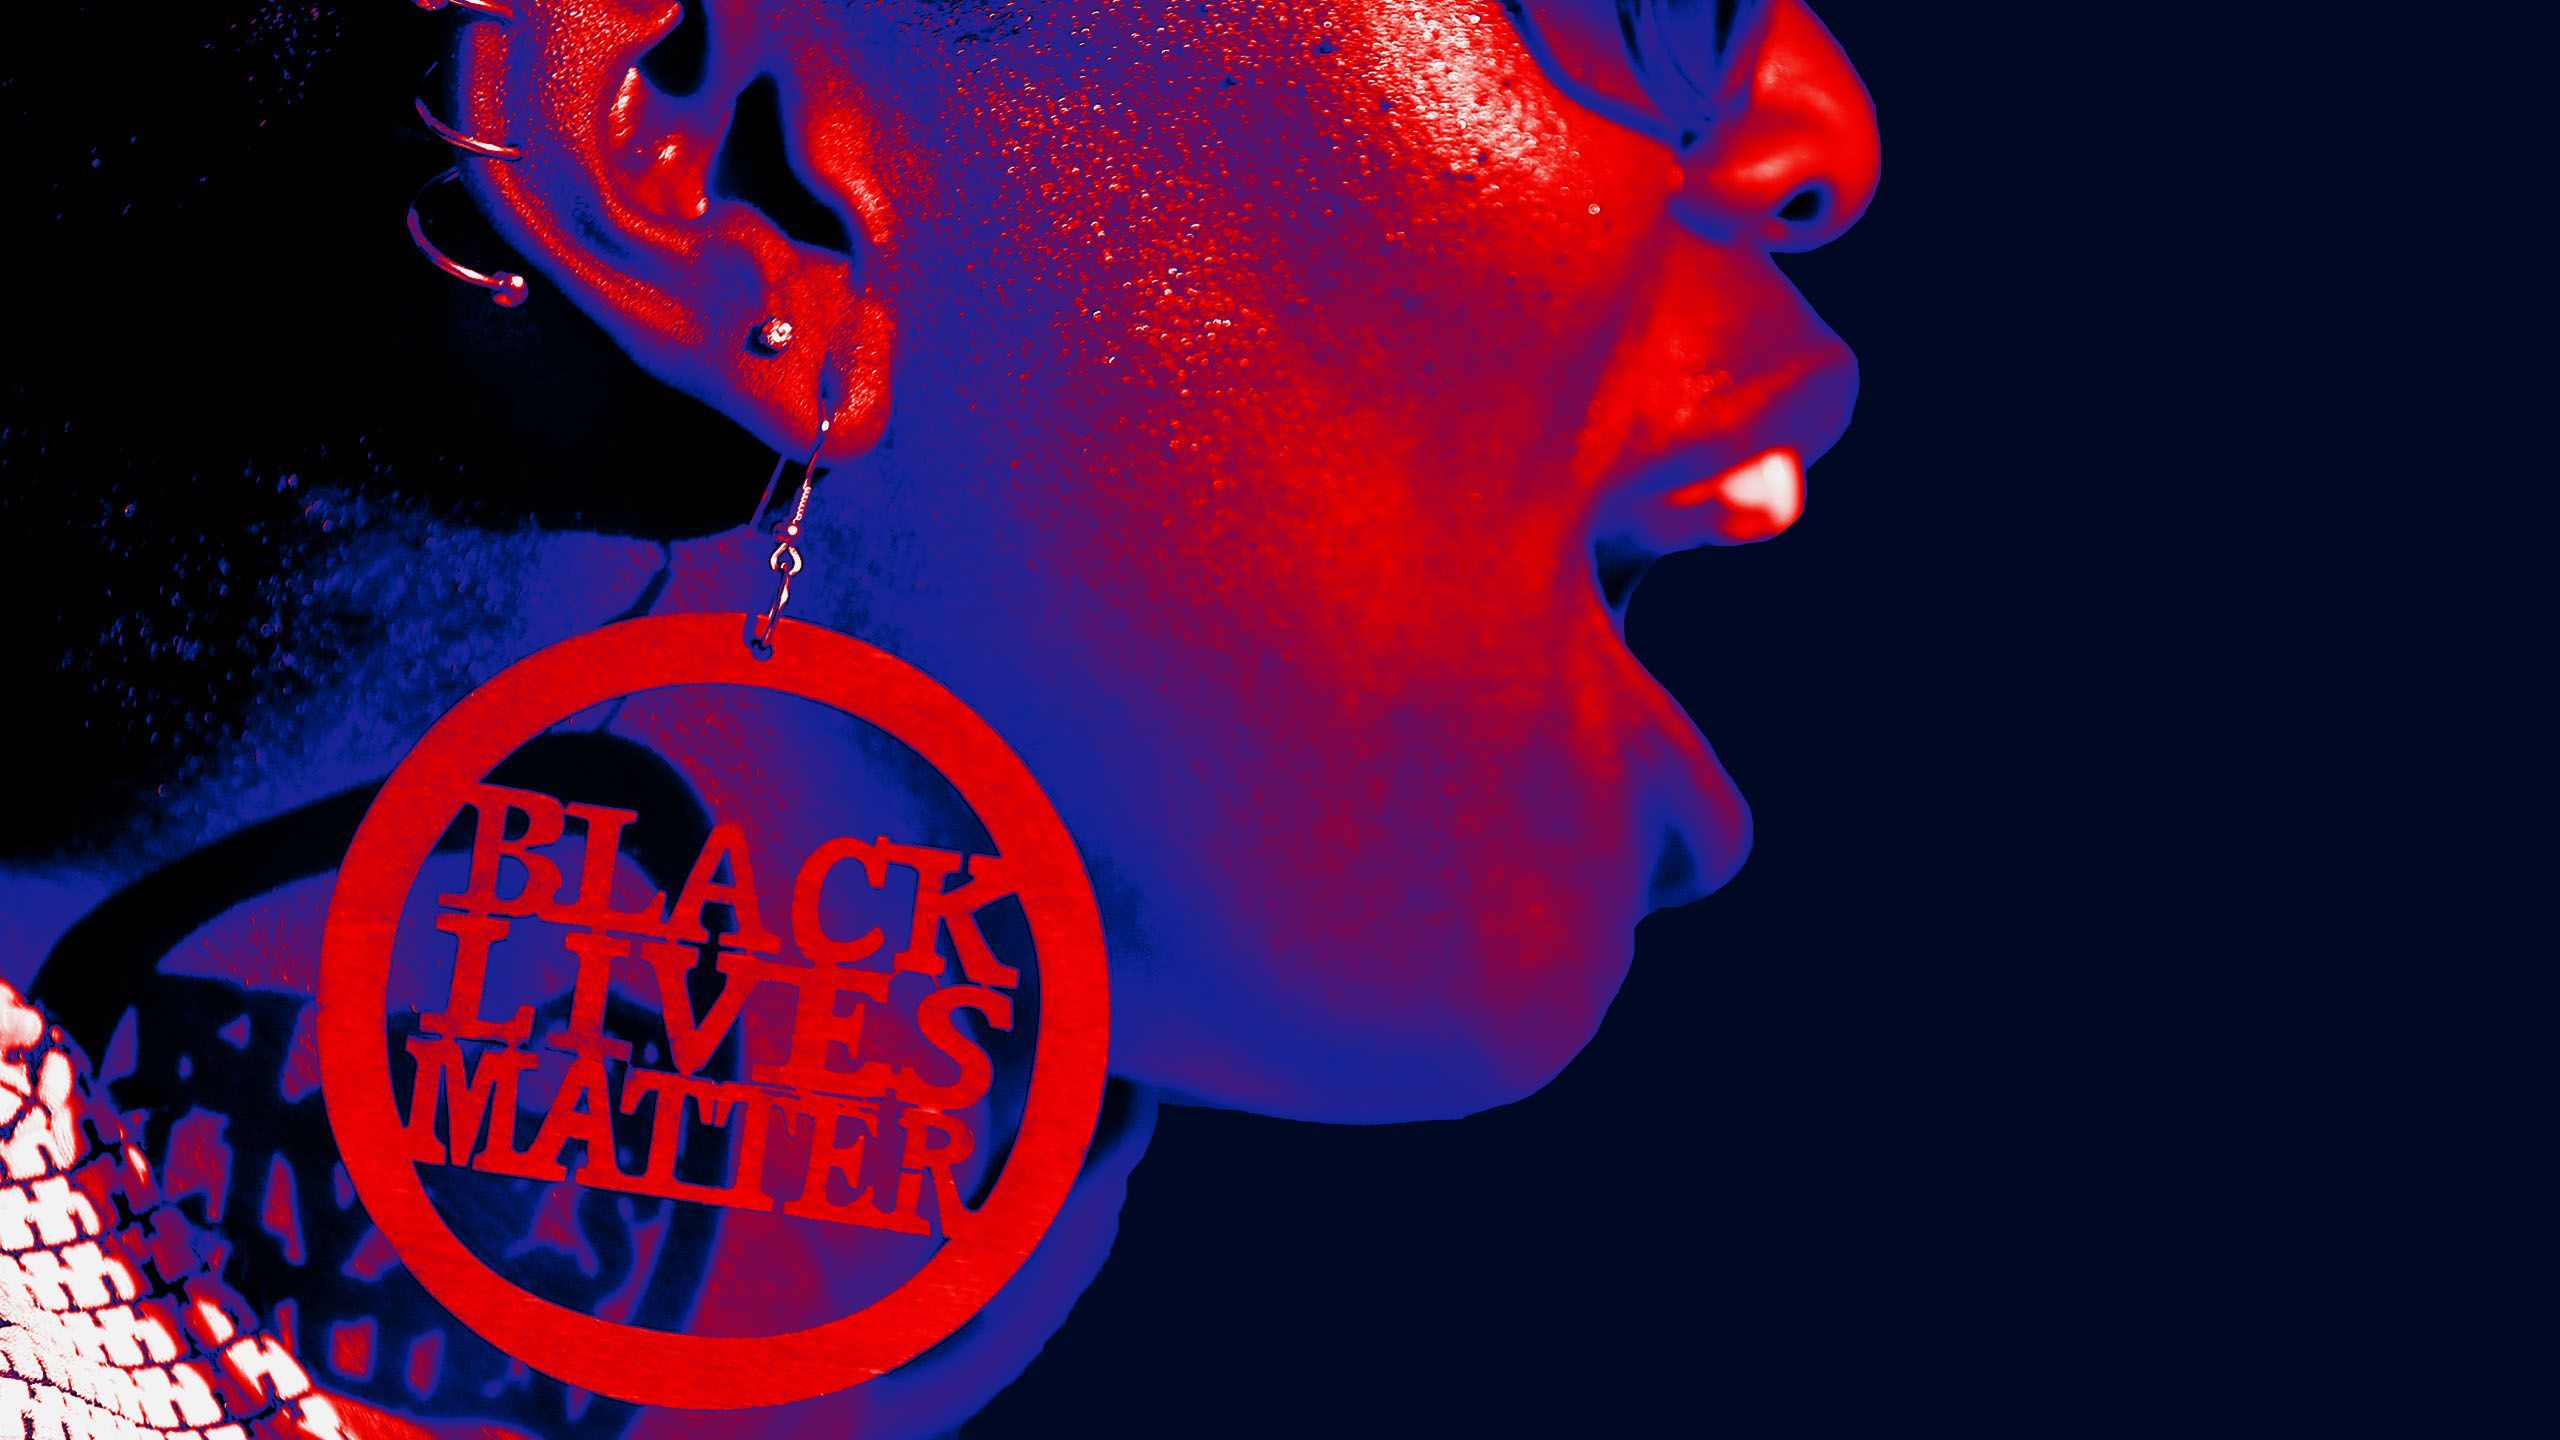 Black Lives Matter Wallpaper Free Black Lives Matter Background